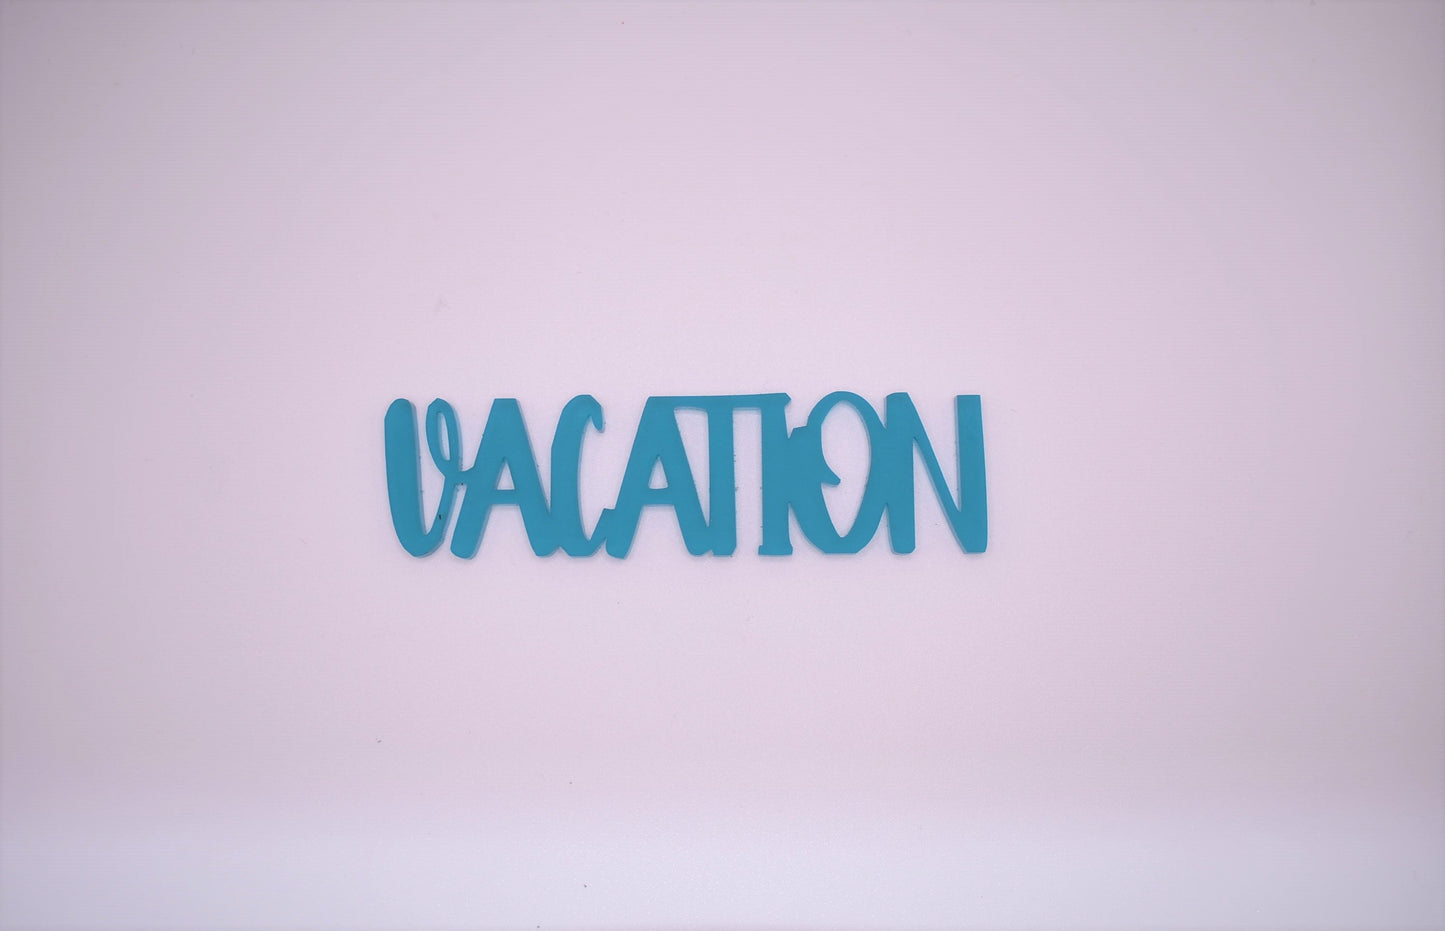 Vacation 2 - Creative Designs By Kari